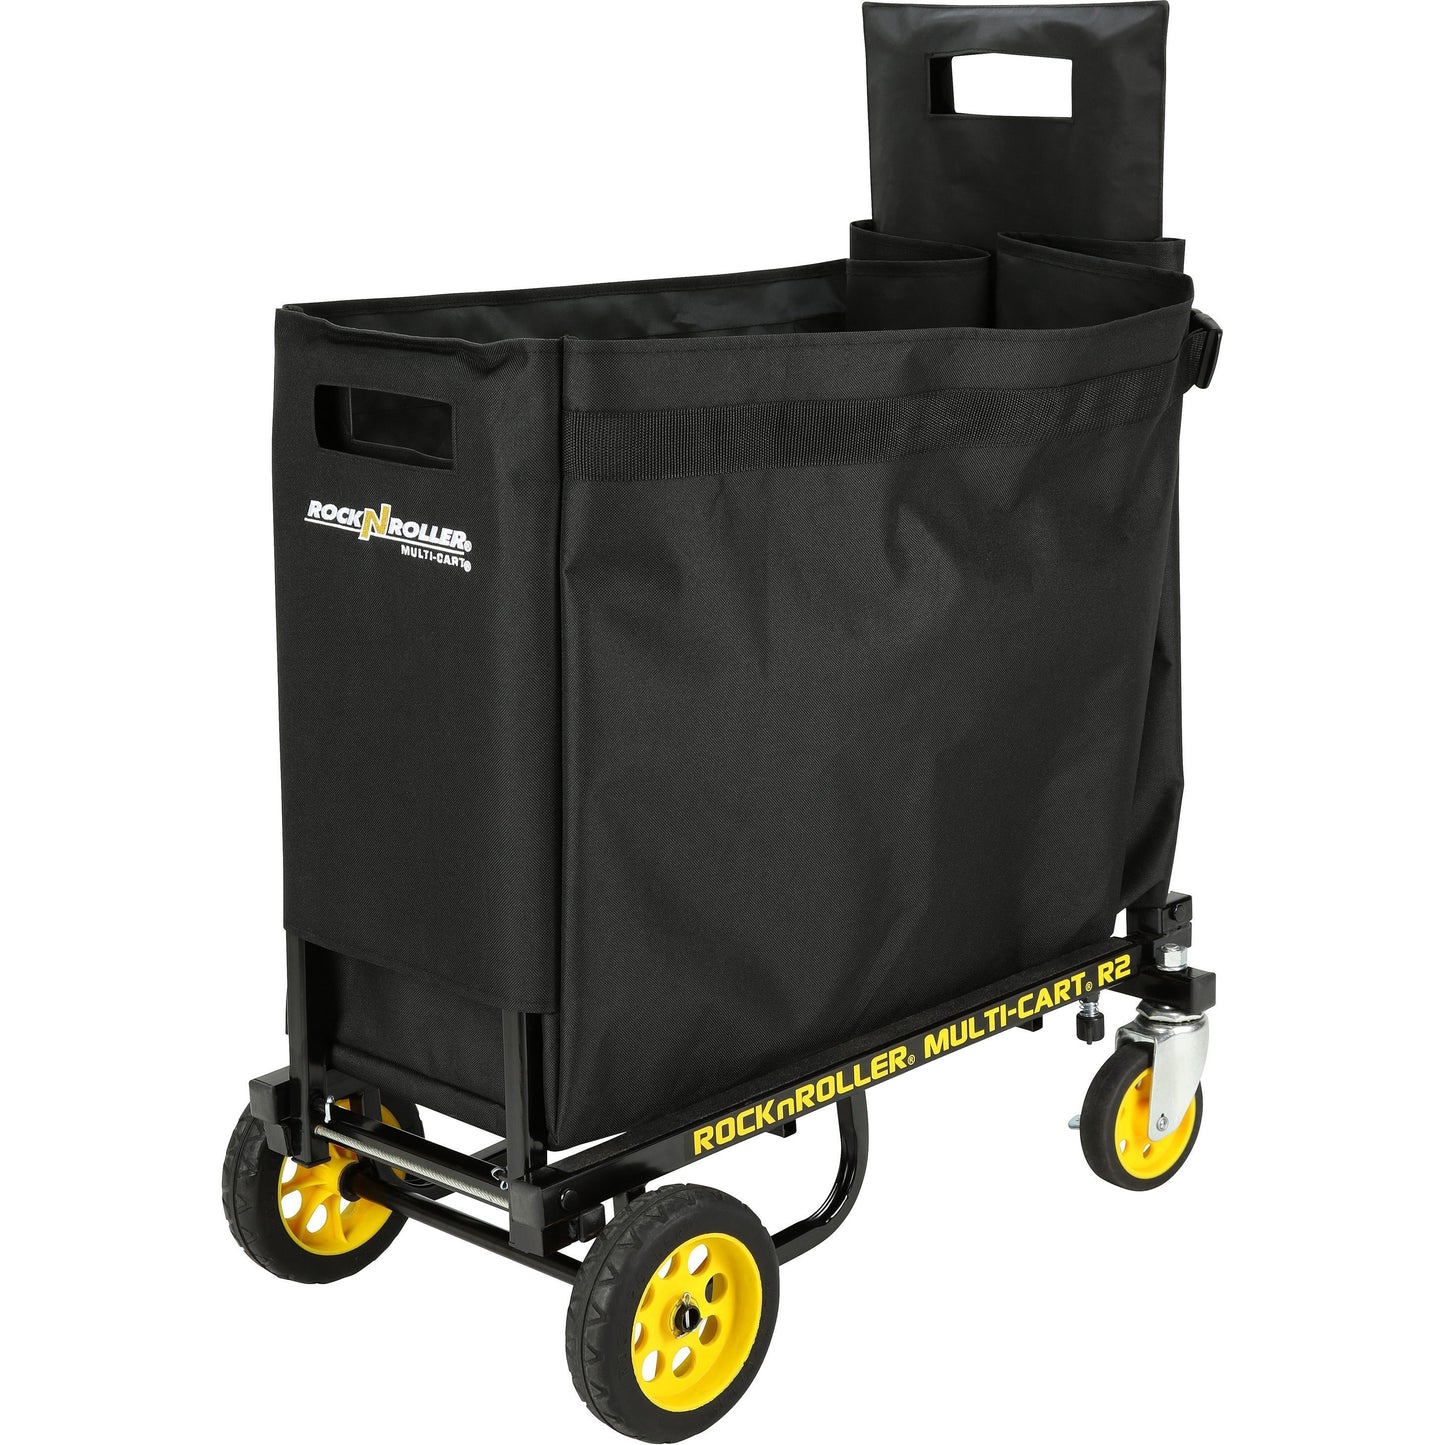 RocknRoller RSA-WAG2 Wagon Bag for R2 Carts